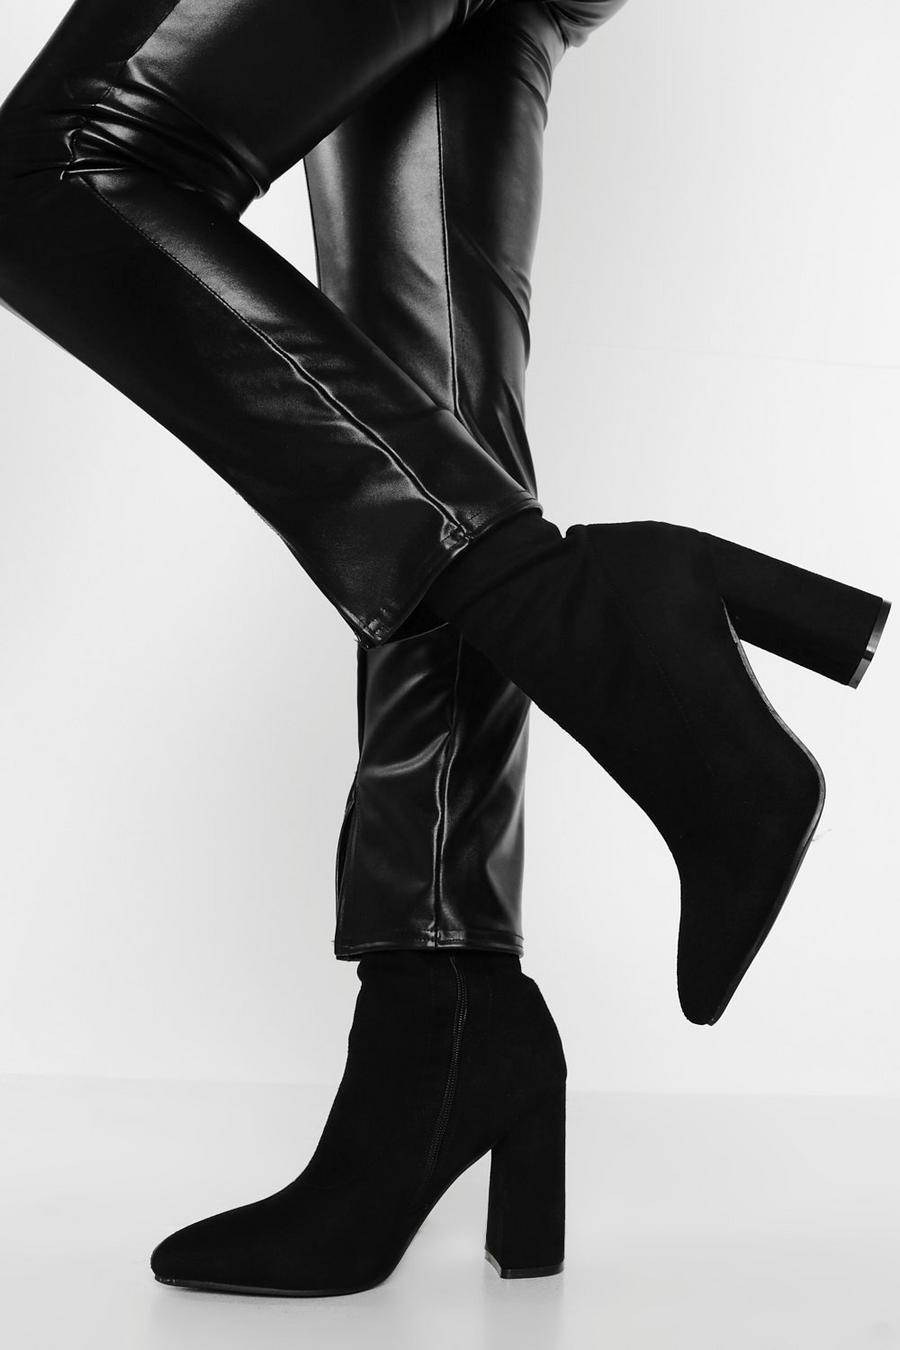 Botas calcetín de holgura ancha y ante sintético con tacón grueso y punta de pico, Negro black